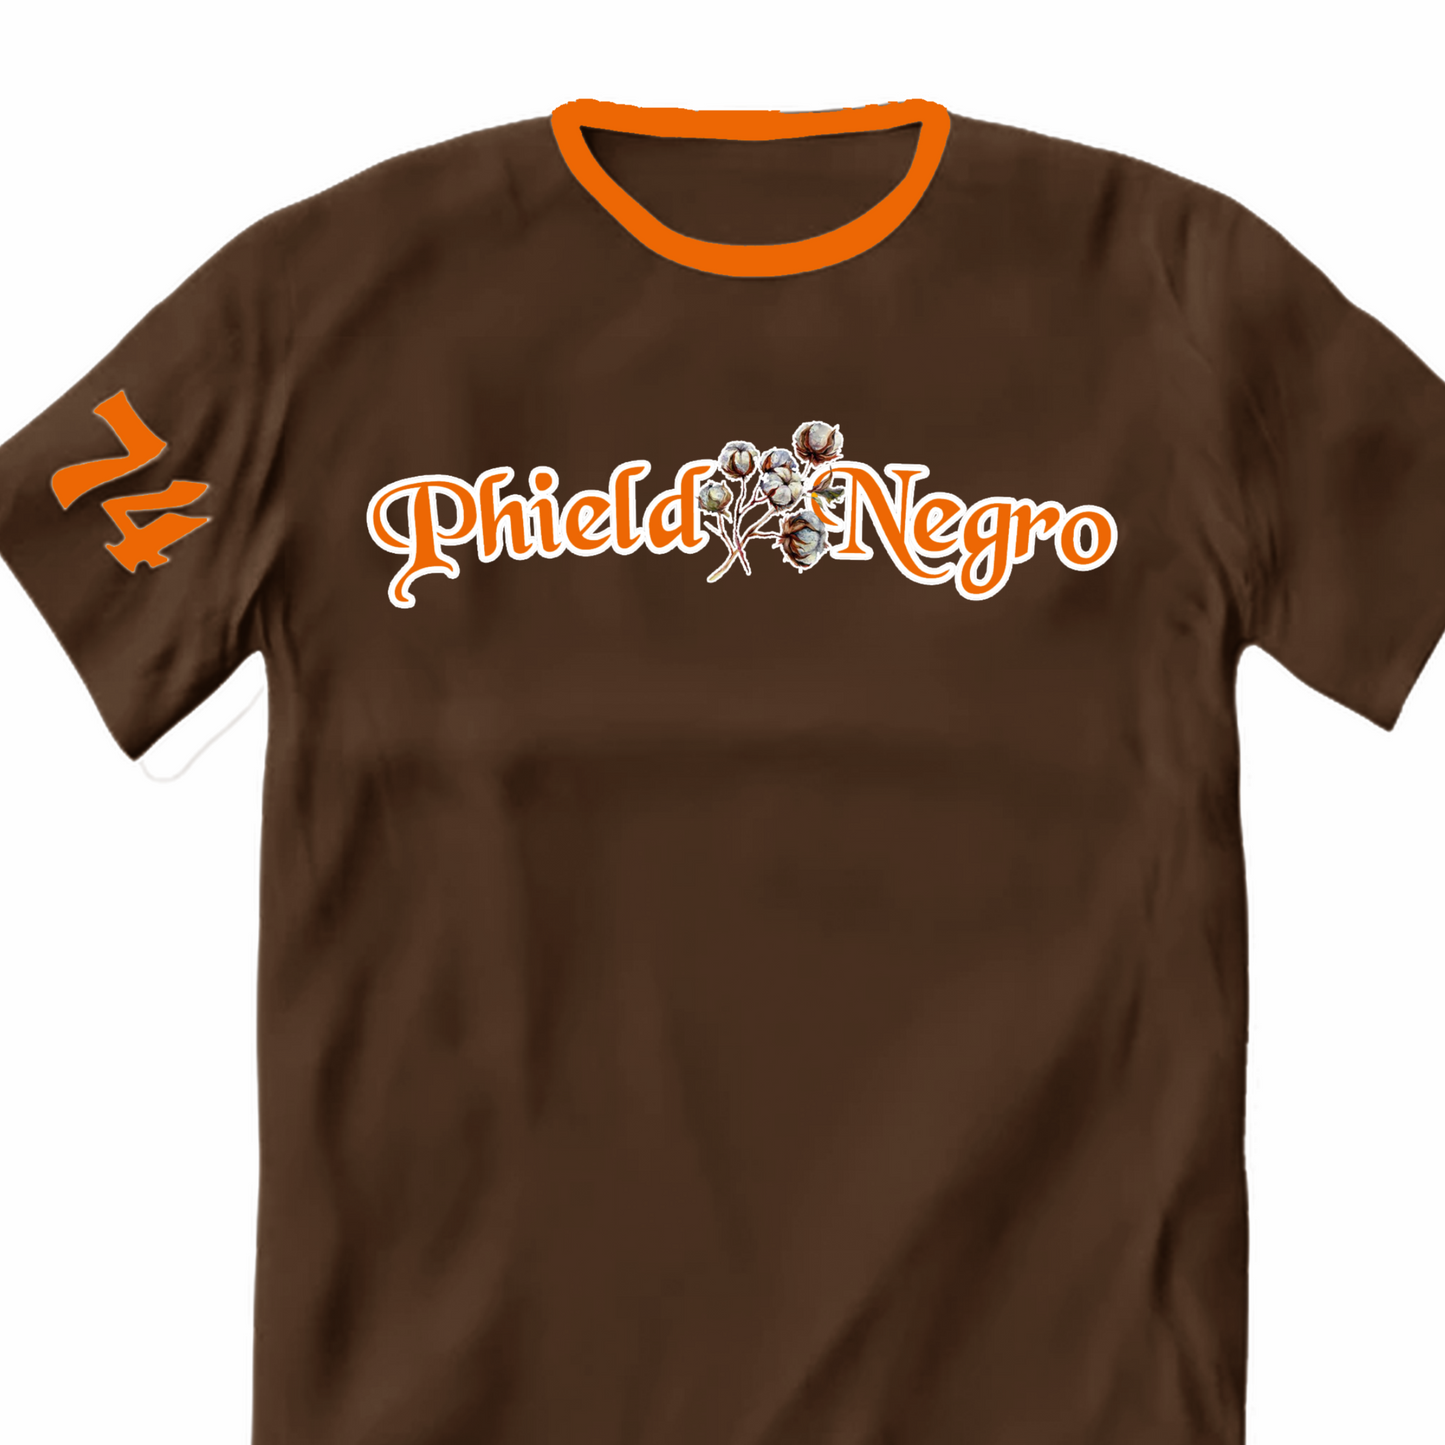 Premium Phield Negro T-Shirt (Chocolate Brown and Orange)